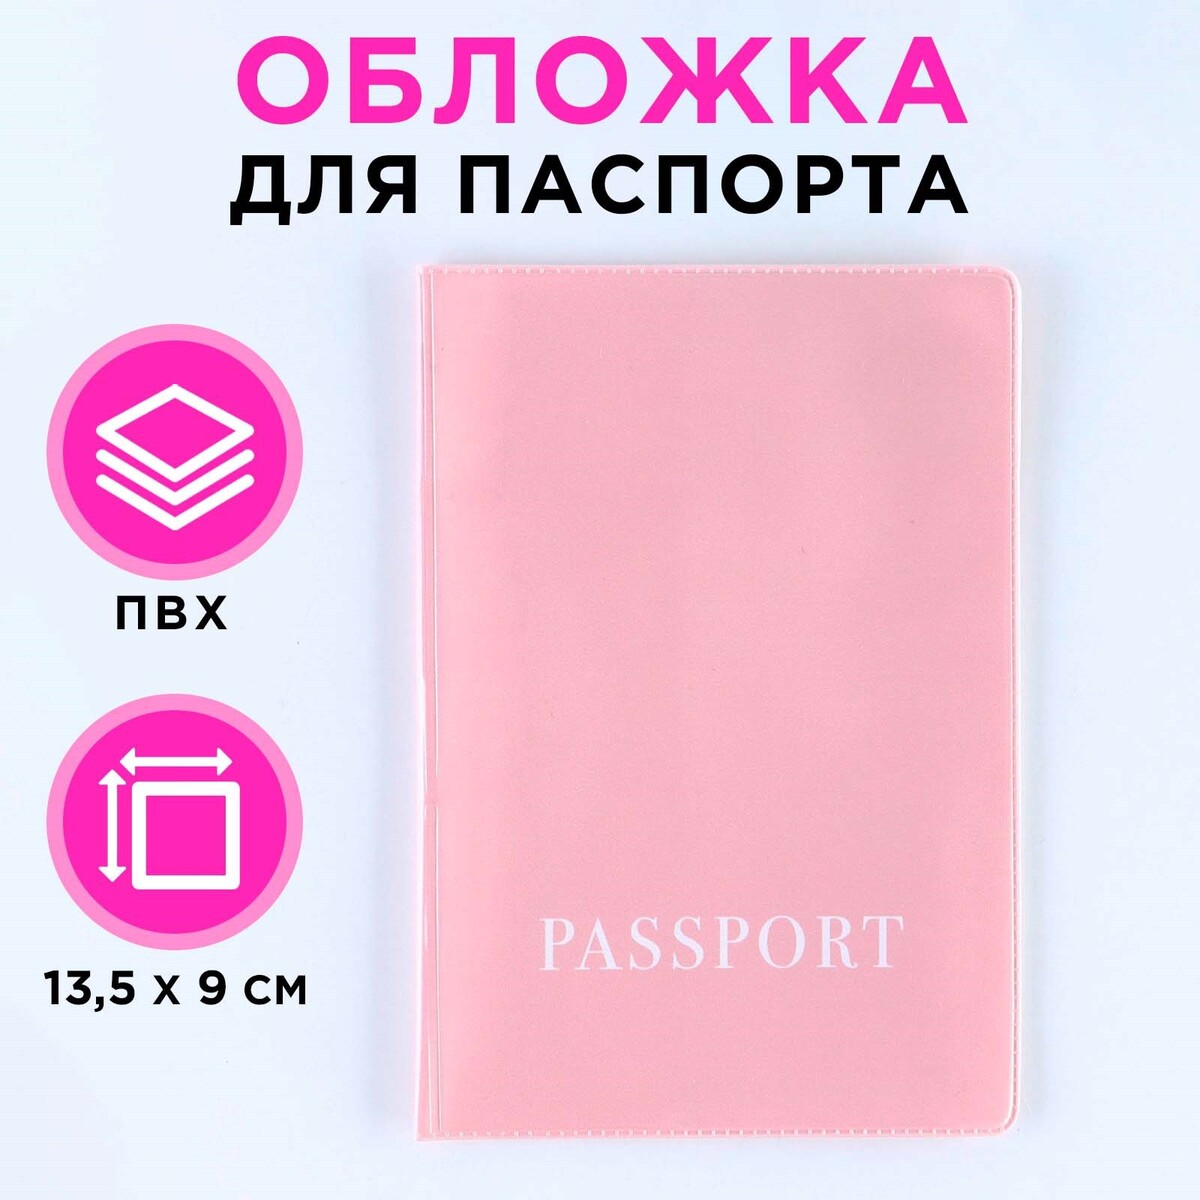 Обложка для паспорта, пвх, оттенок пыльная роза тёрка для цедры и сыра microplane пыльная роза